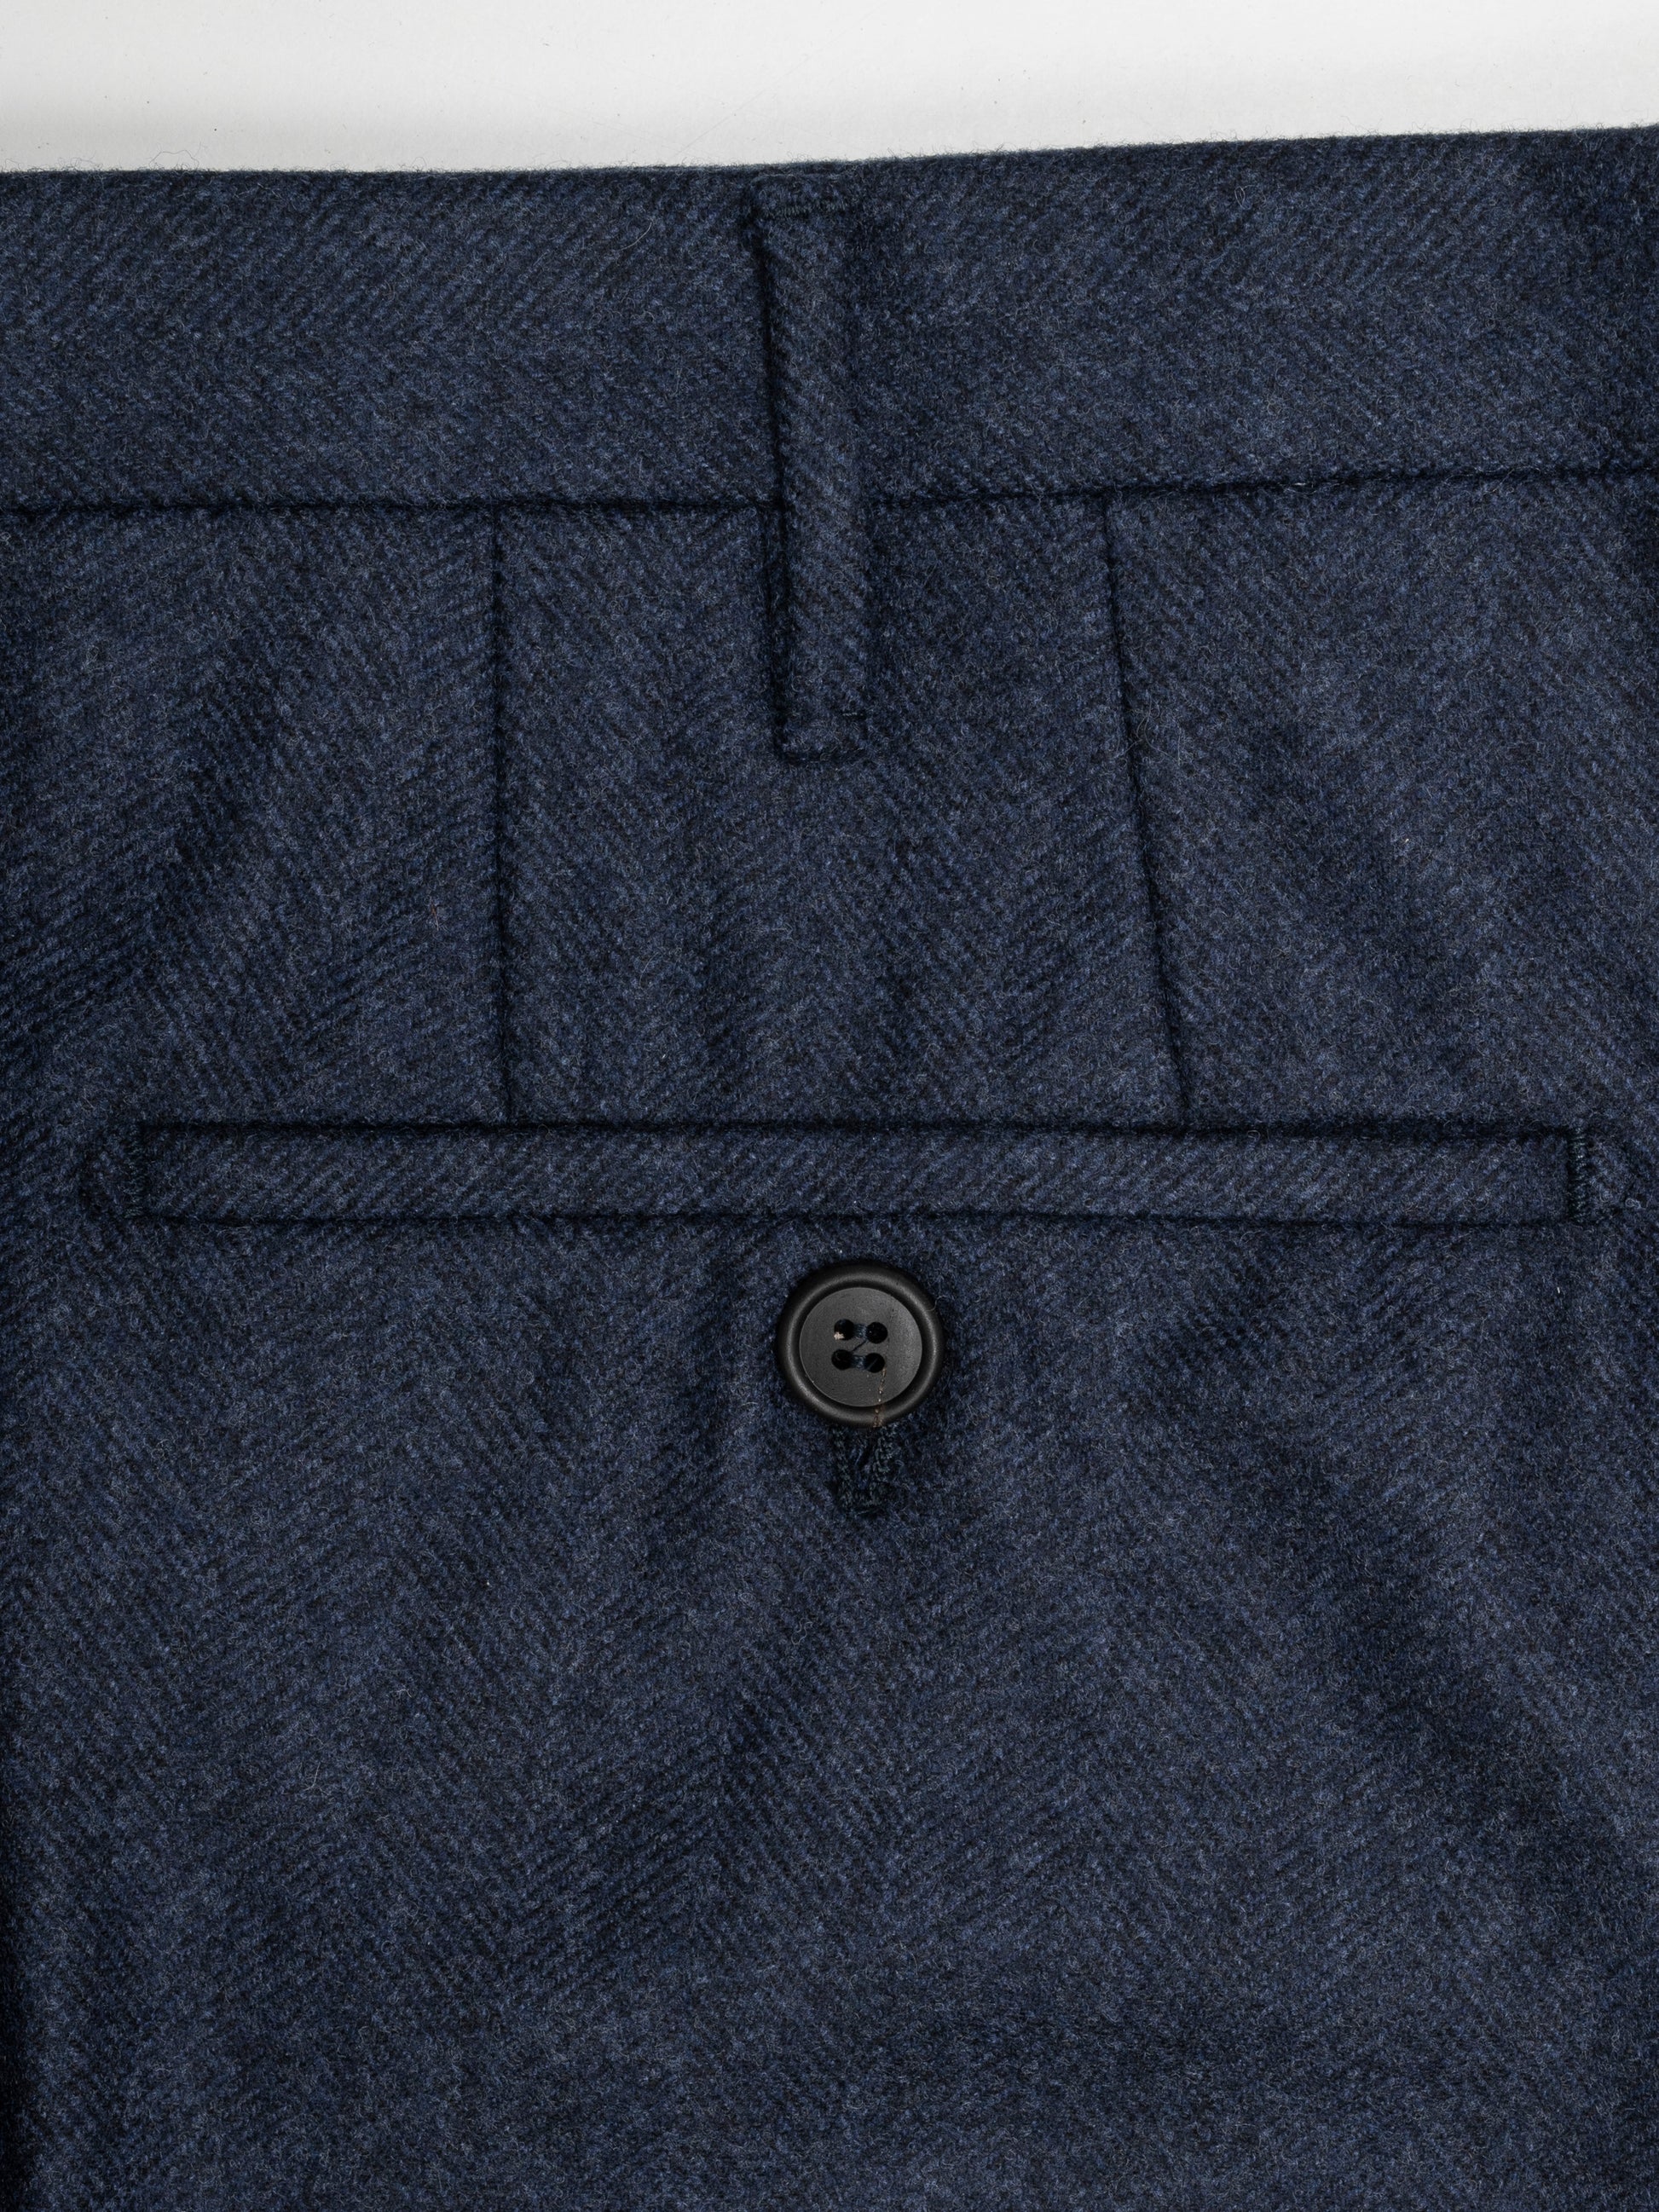 Dark blue herringbone flannel trousers – Rota SRL